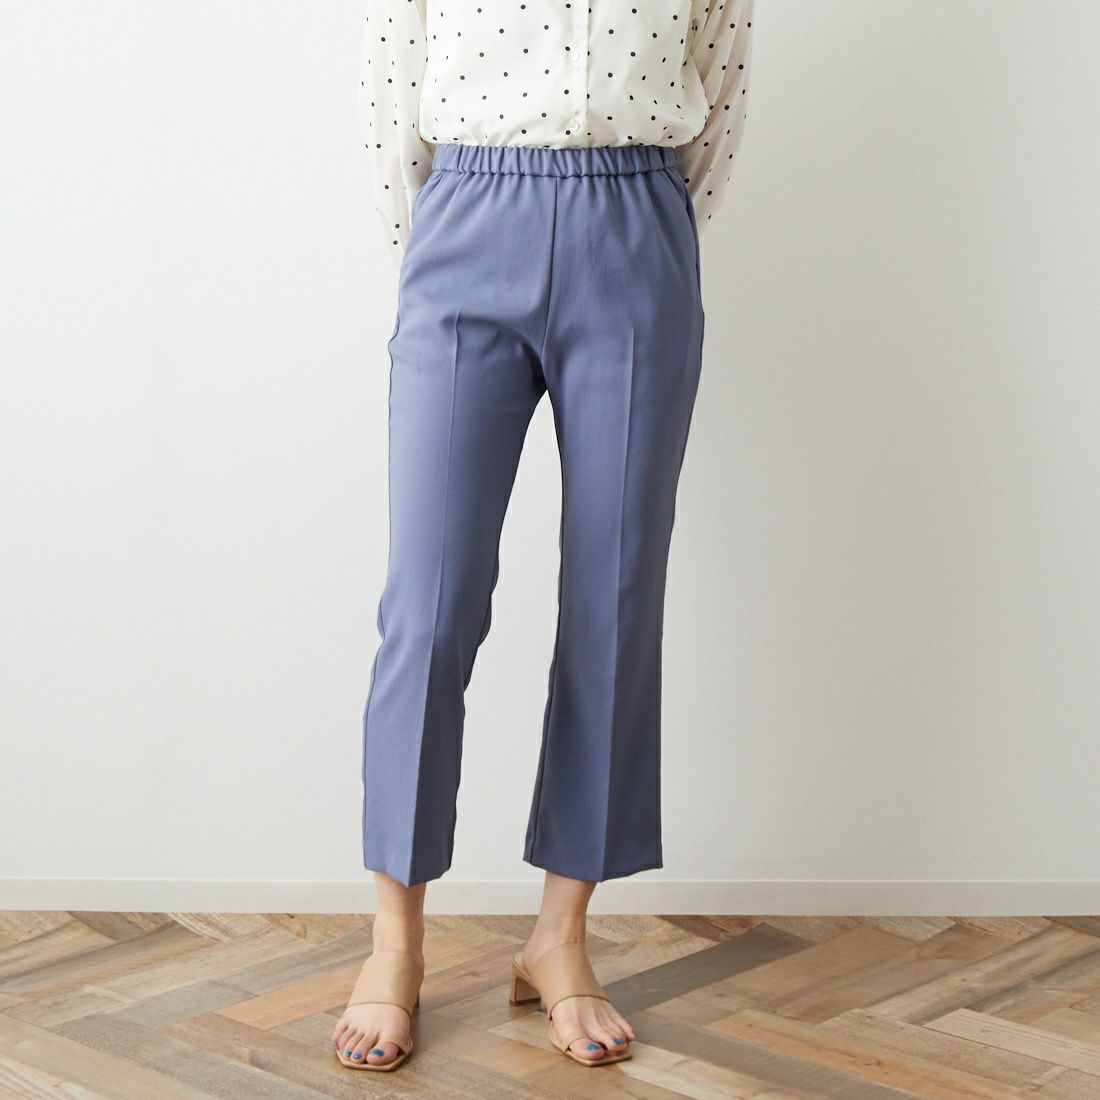 Jeans Factory Clothes [ジーンズファクトリークローズ] フルダルエアーセミフレアパンツ [217060]